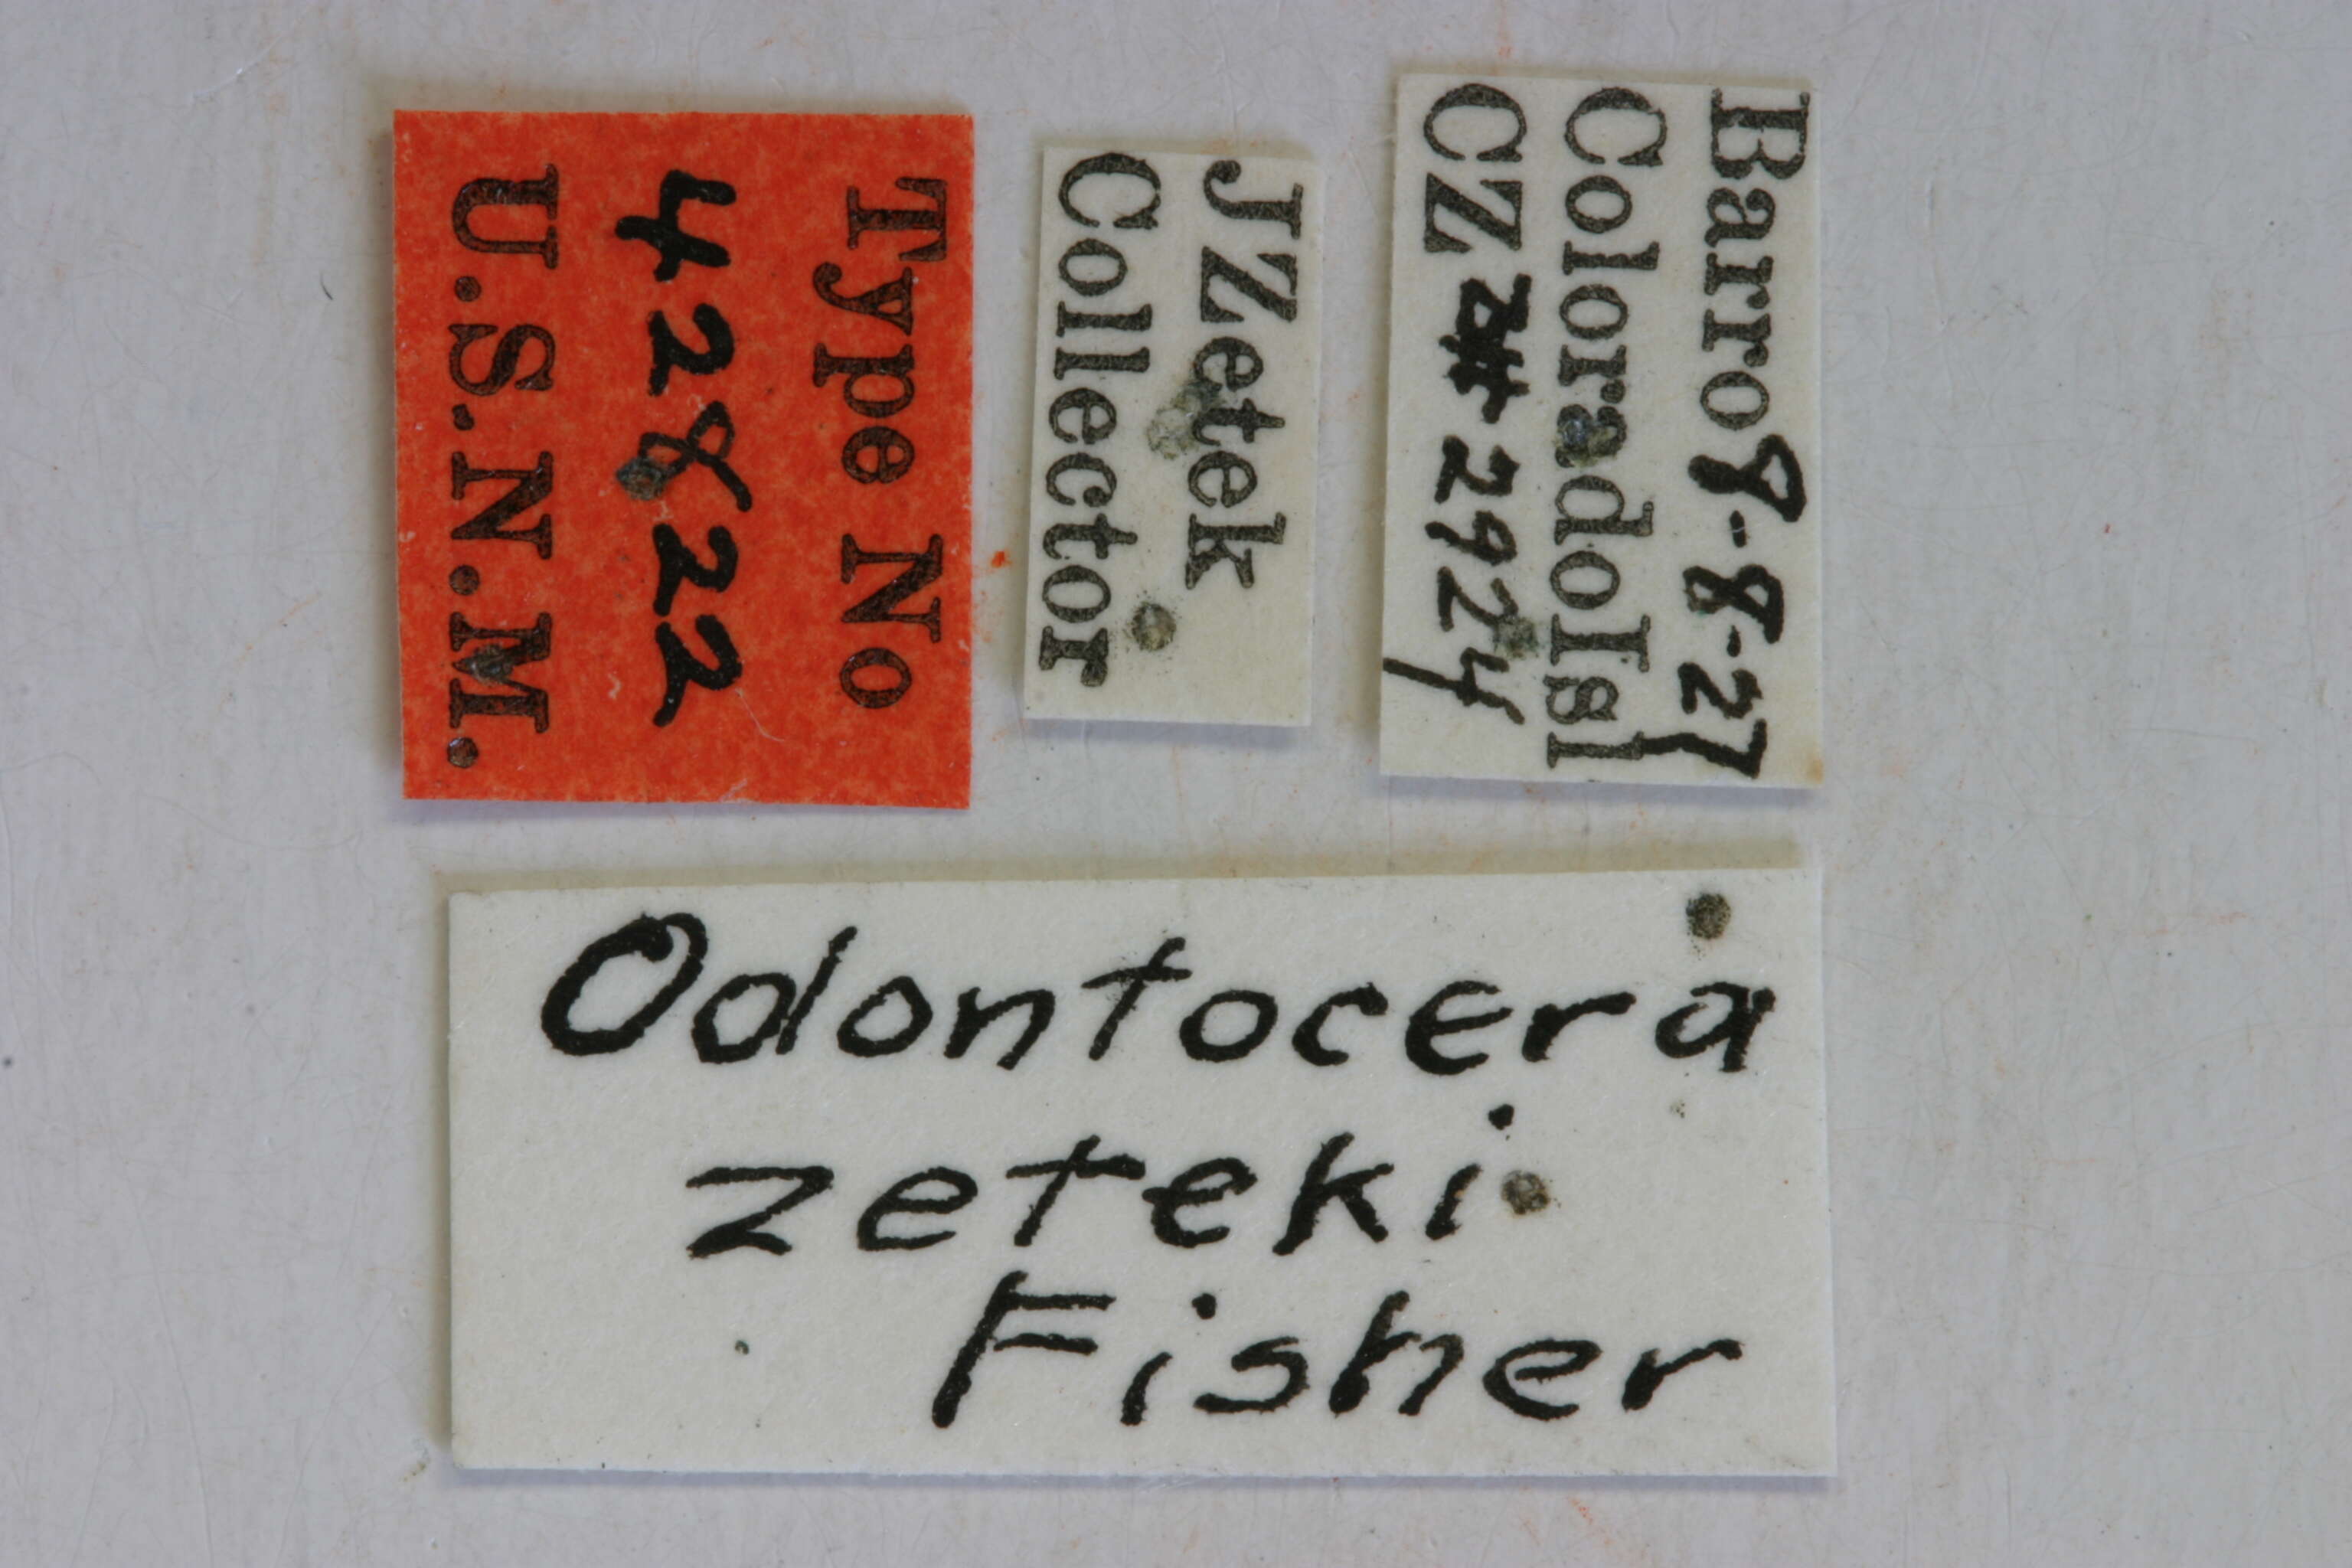 Image of Odontocera zeteki Fisher 1930